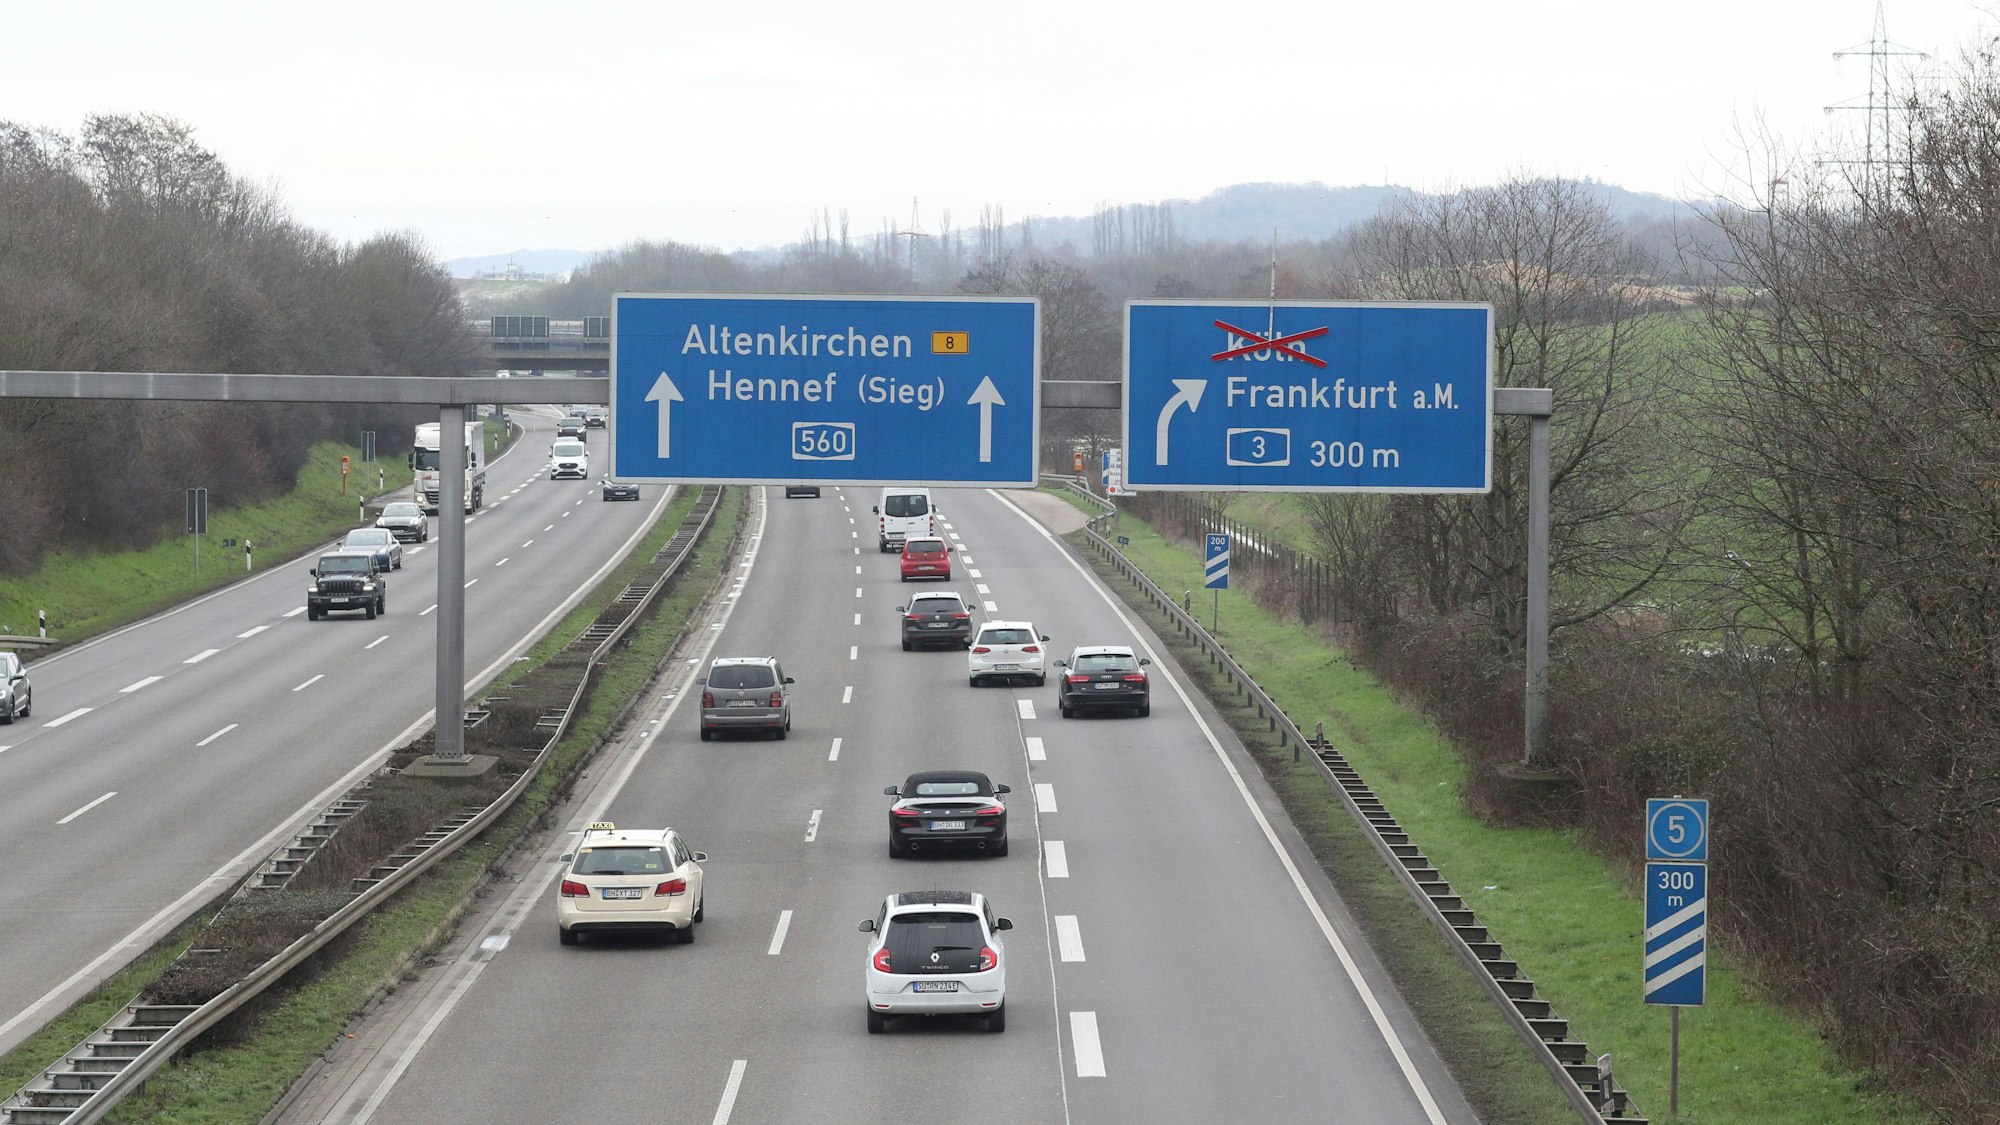 Auf einem Autobahnschild ist die Richtung Köln durchgestrichen.